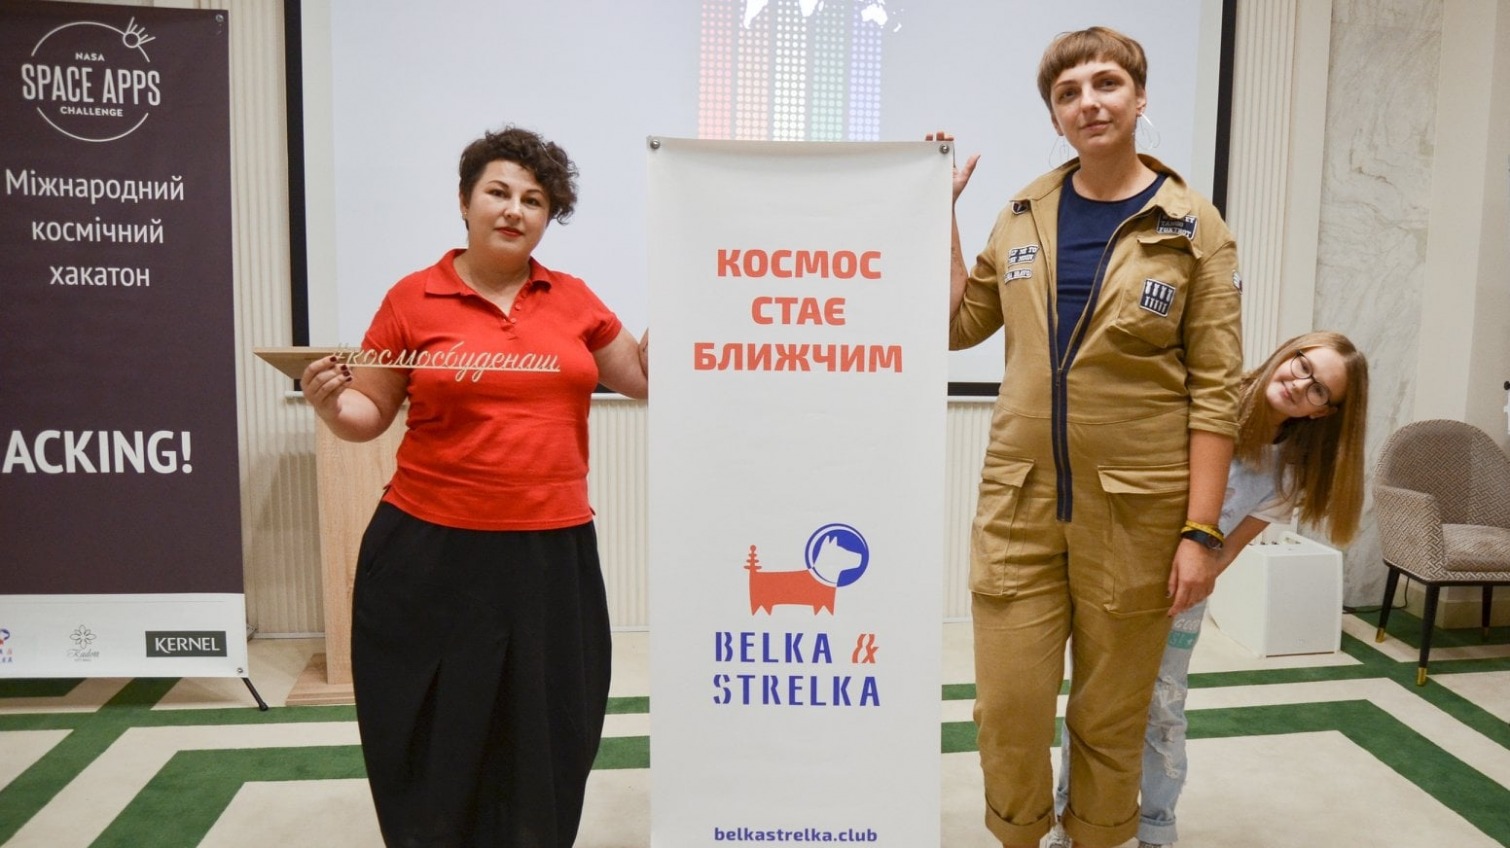 Осенью в Одессе проведут космический хакатон: команда ищет единомышленников «фото»